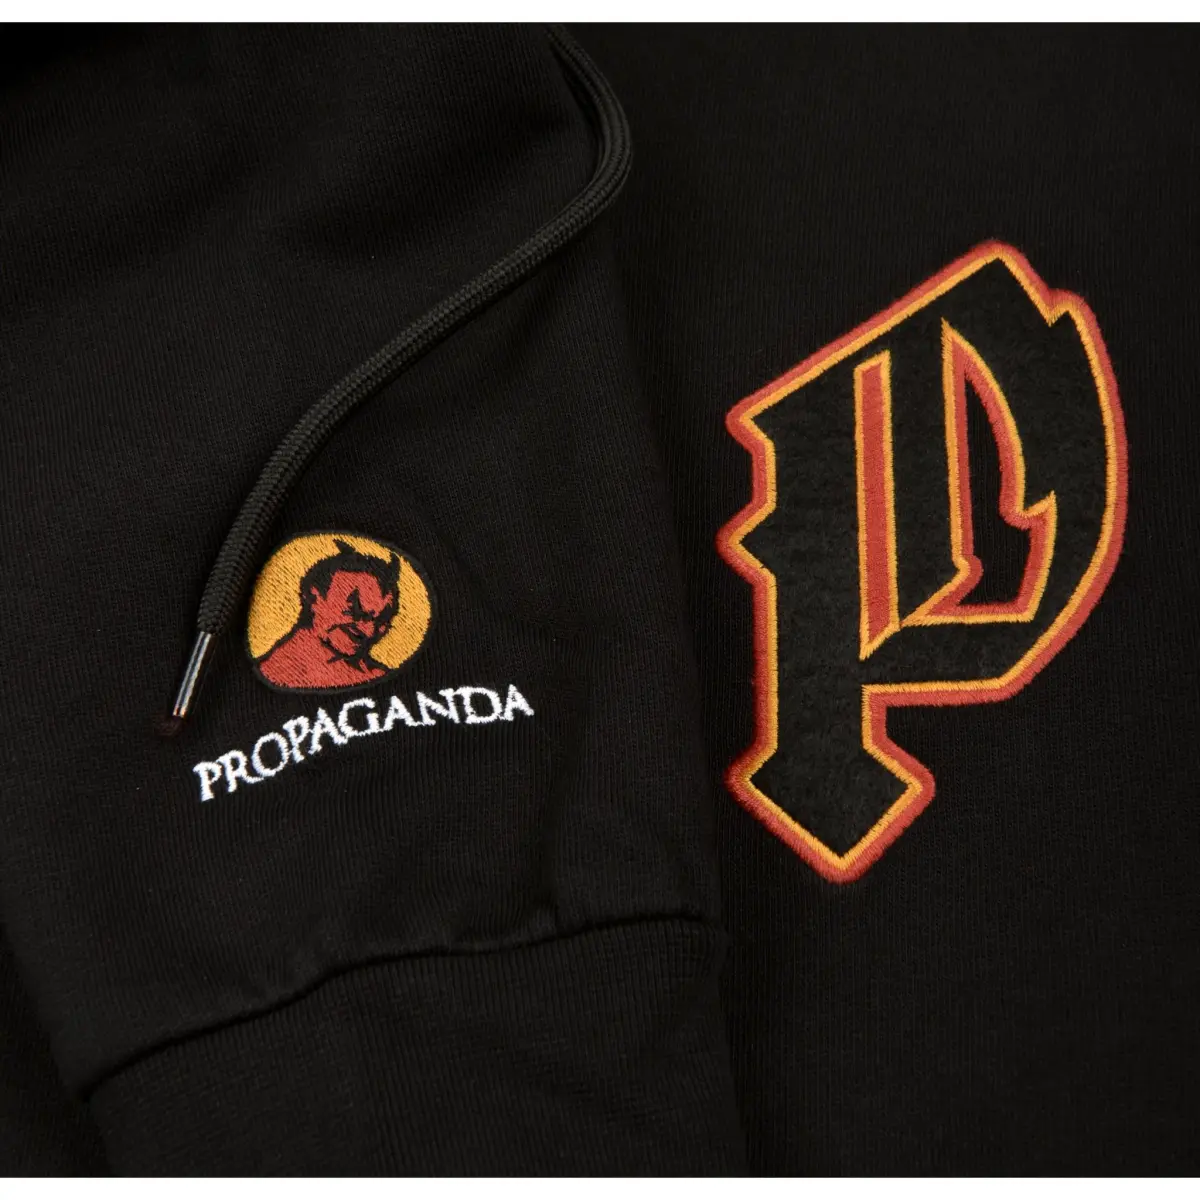 Felpa Propaganda Mefisto Black hoodie